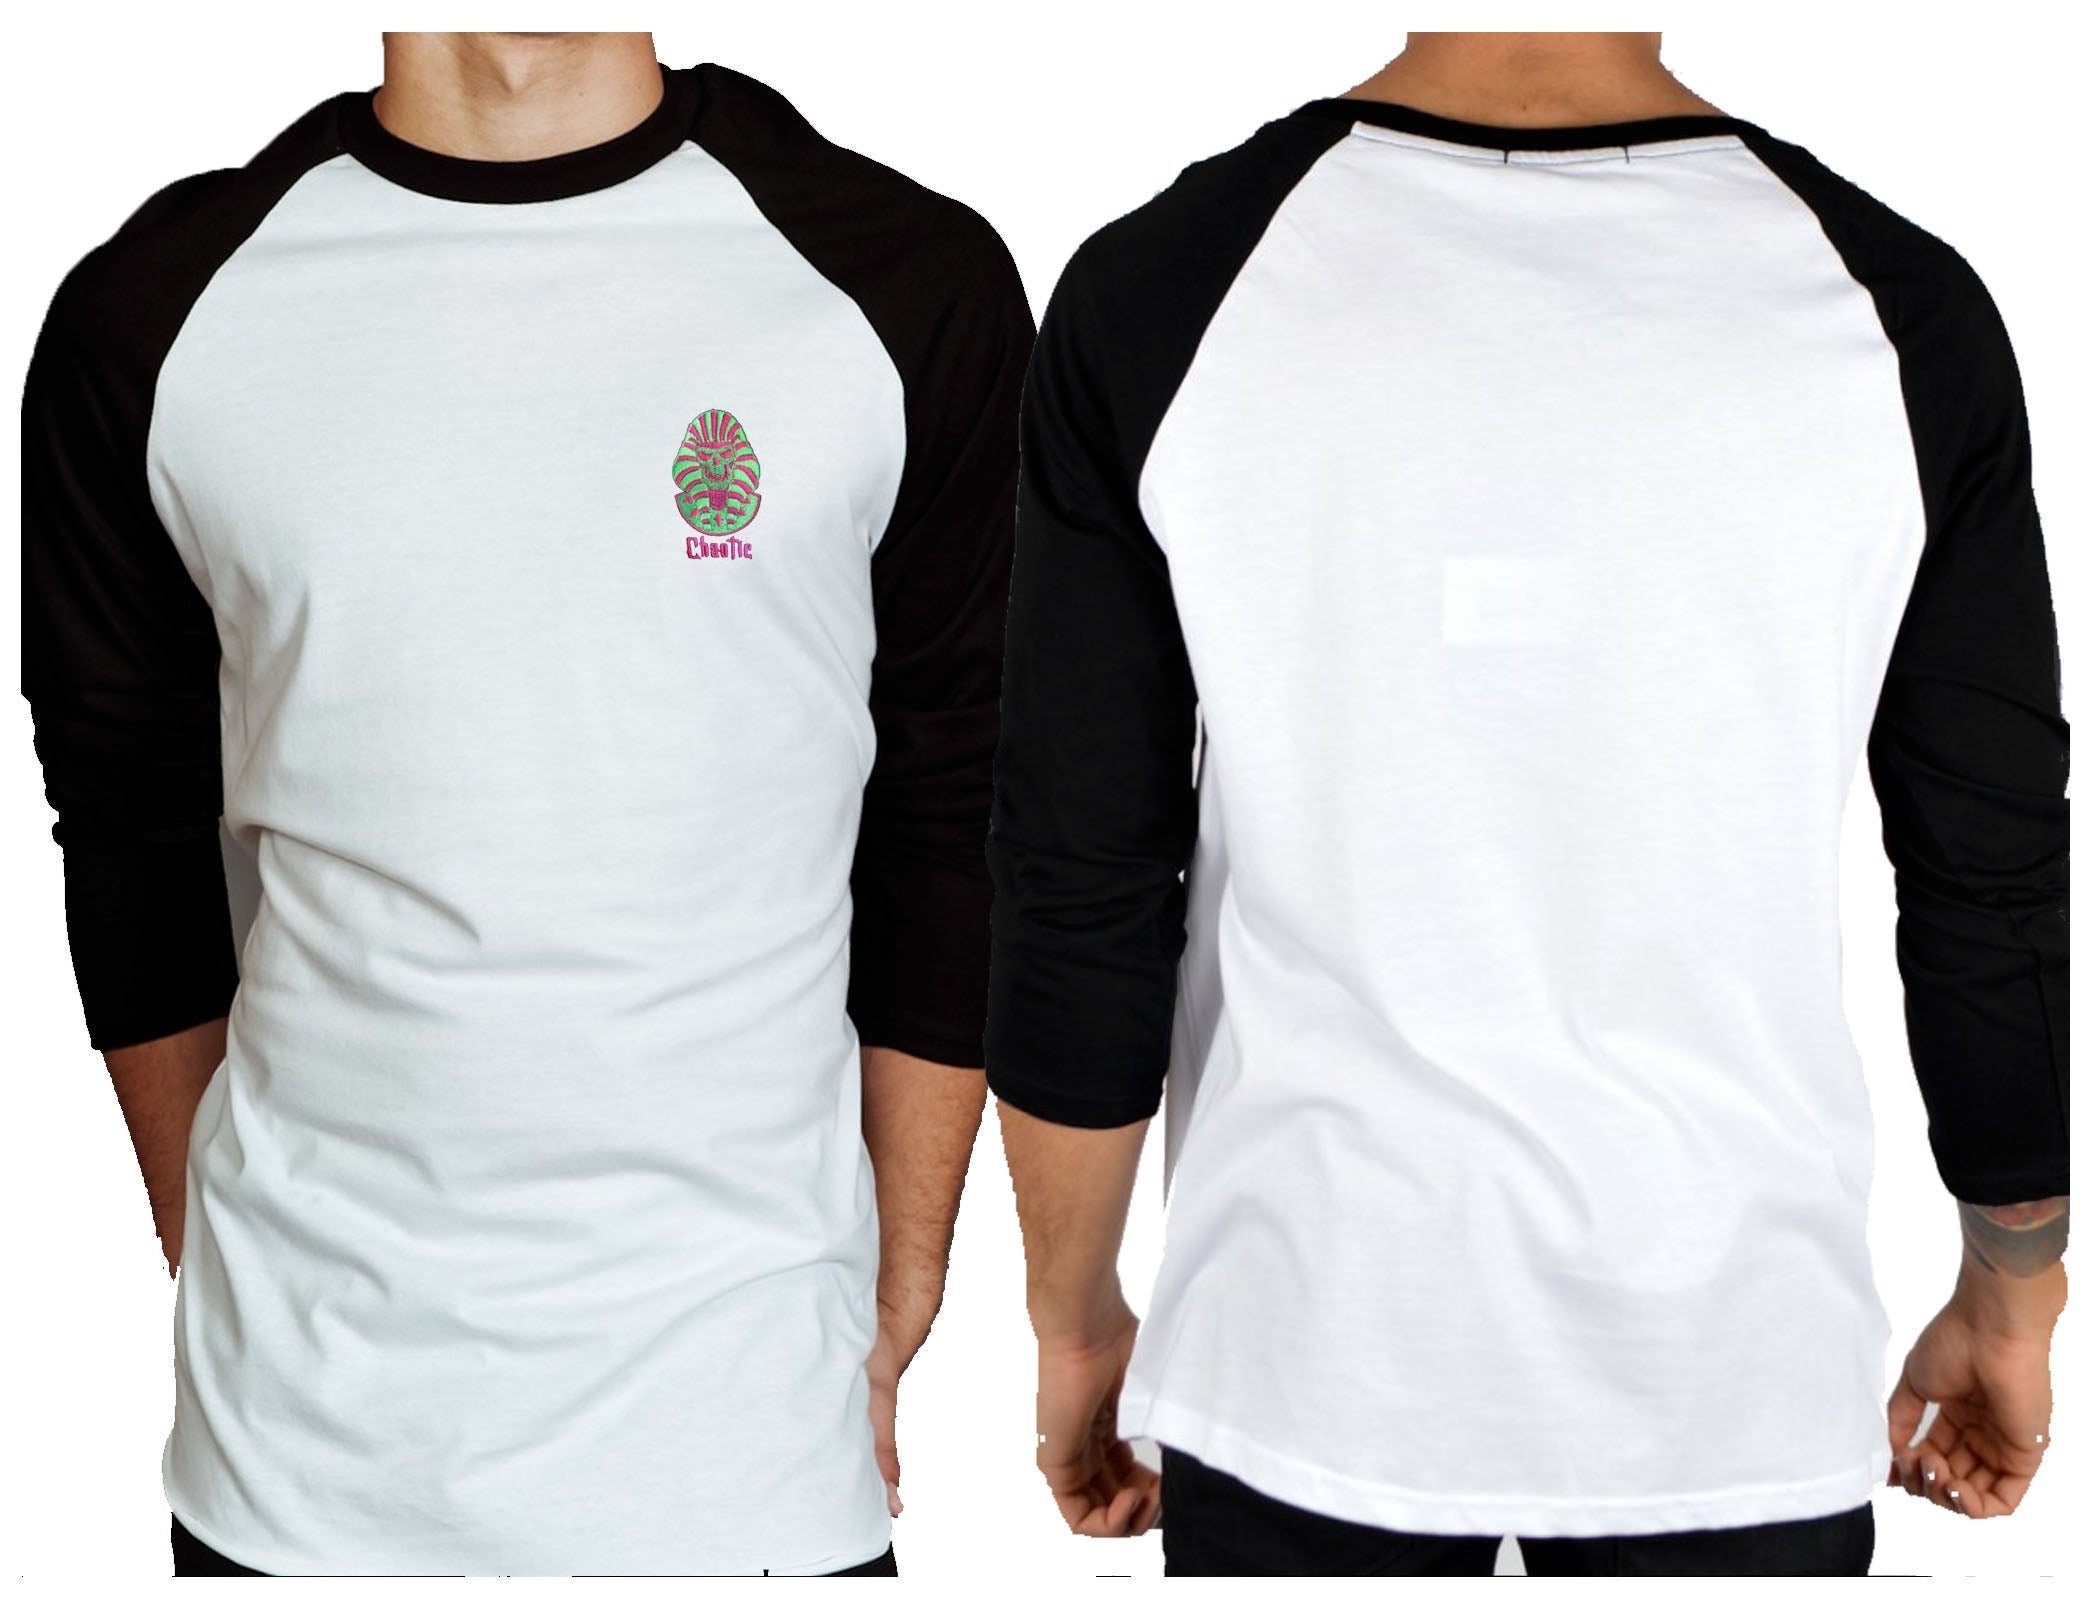 Fluro Pharaoh Neon Skull Raglan 3/4 Sleeve Tee - Chaotic Clothing Streetwear Tshirts